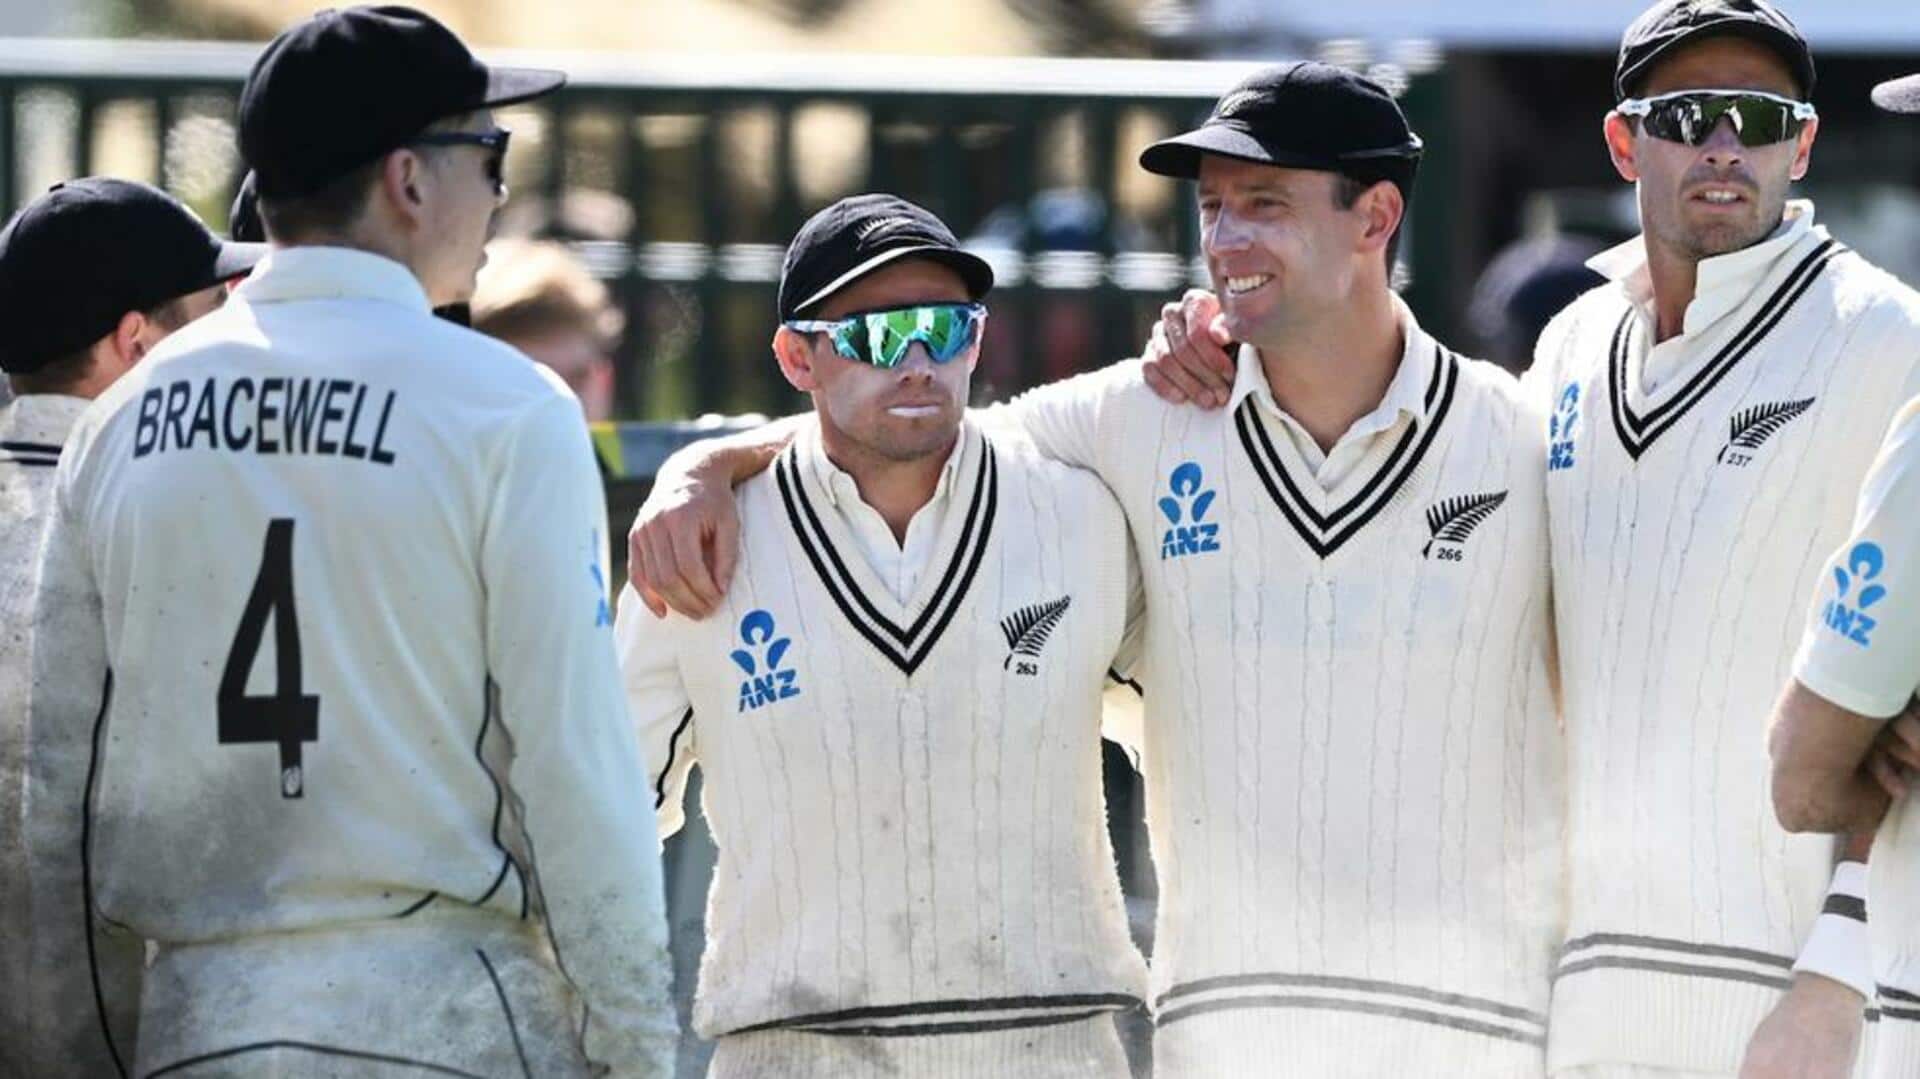 दूसरा टेस्ट: न्यूजीलैंड ने इंग्लैंड को 1 रन से हराया, सीरीज 1-1 से बराबर